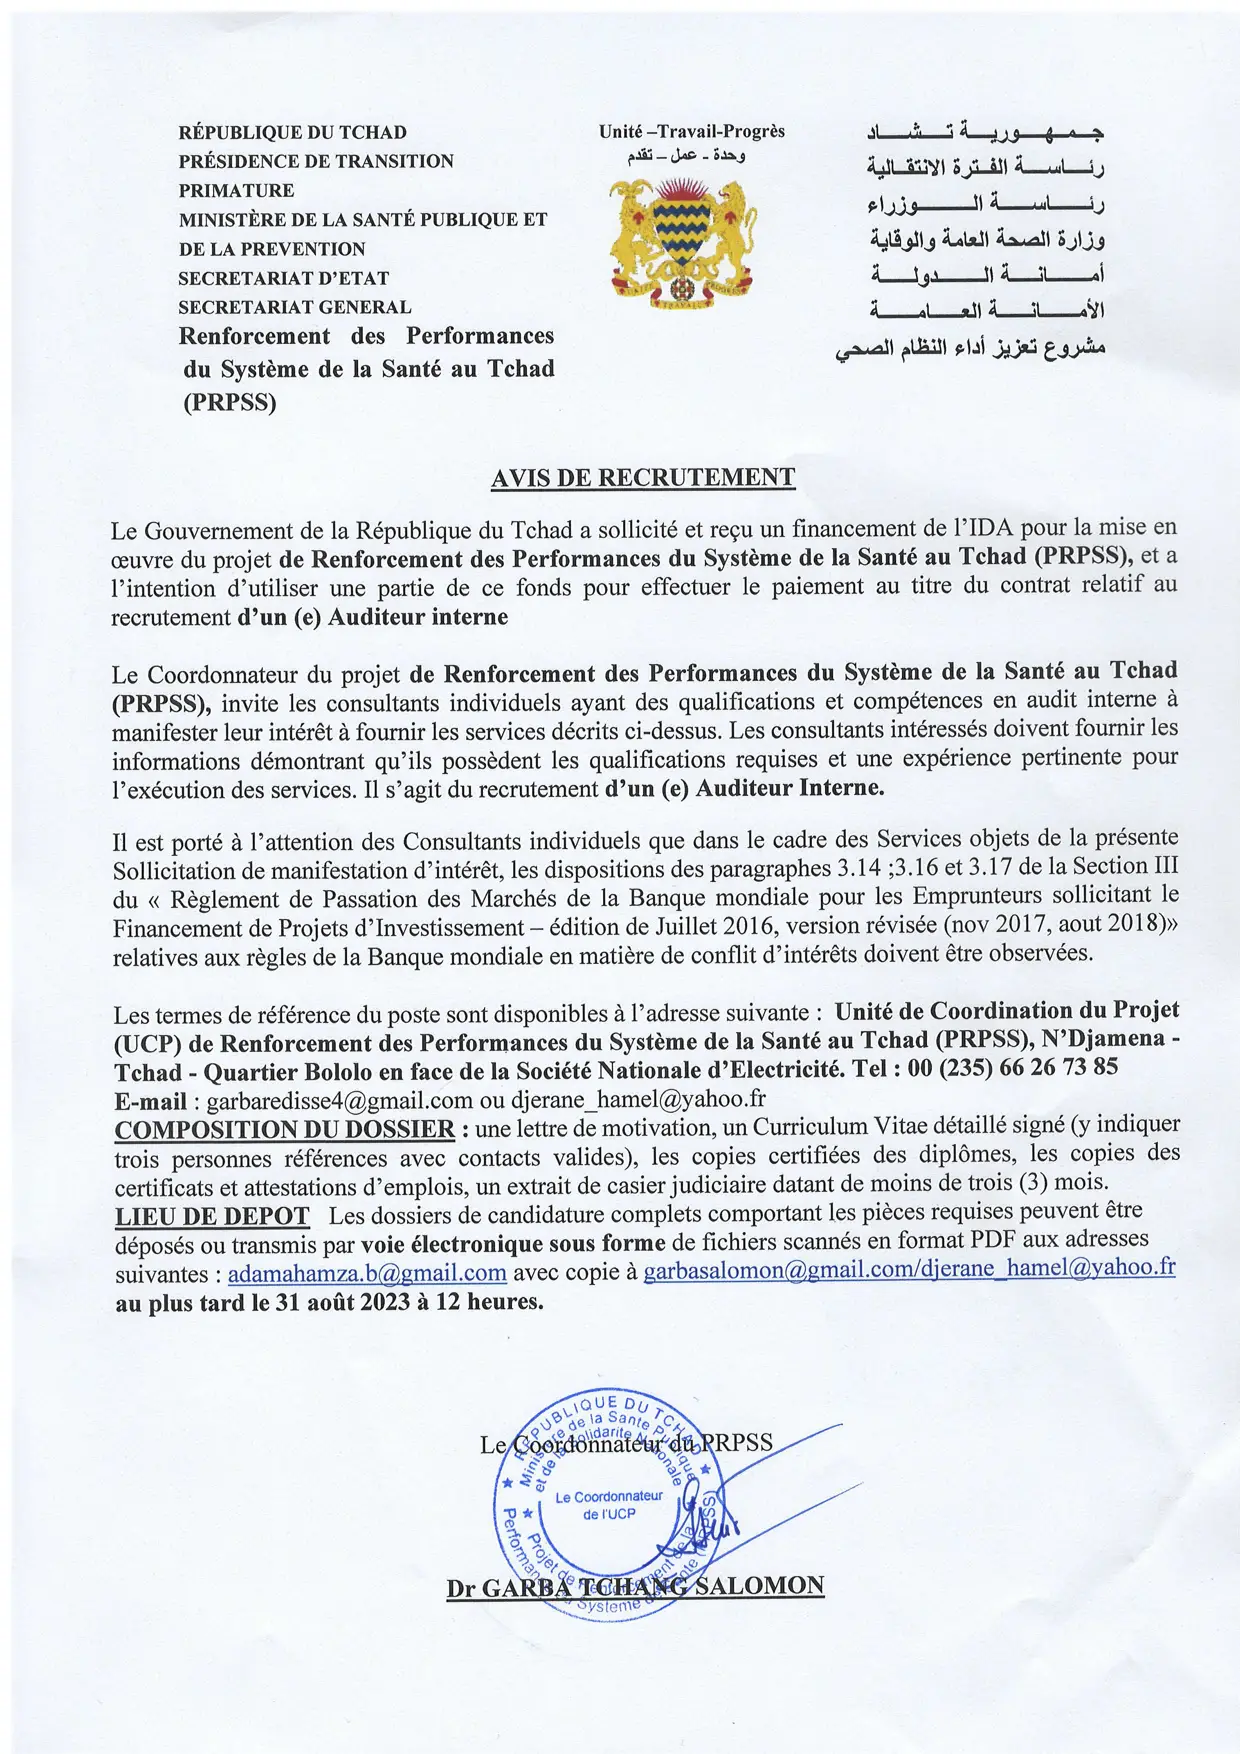 Tchad : le PRPSS lance un avis de recrutement d'un(e) Auditeur interne